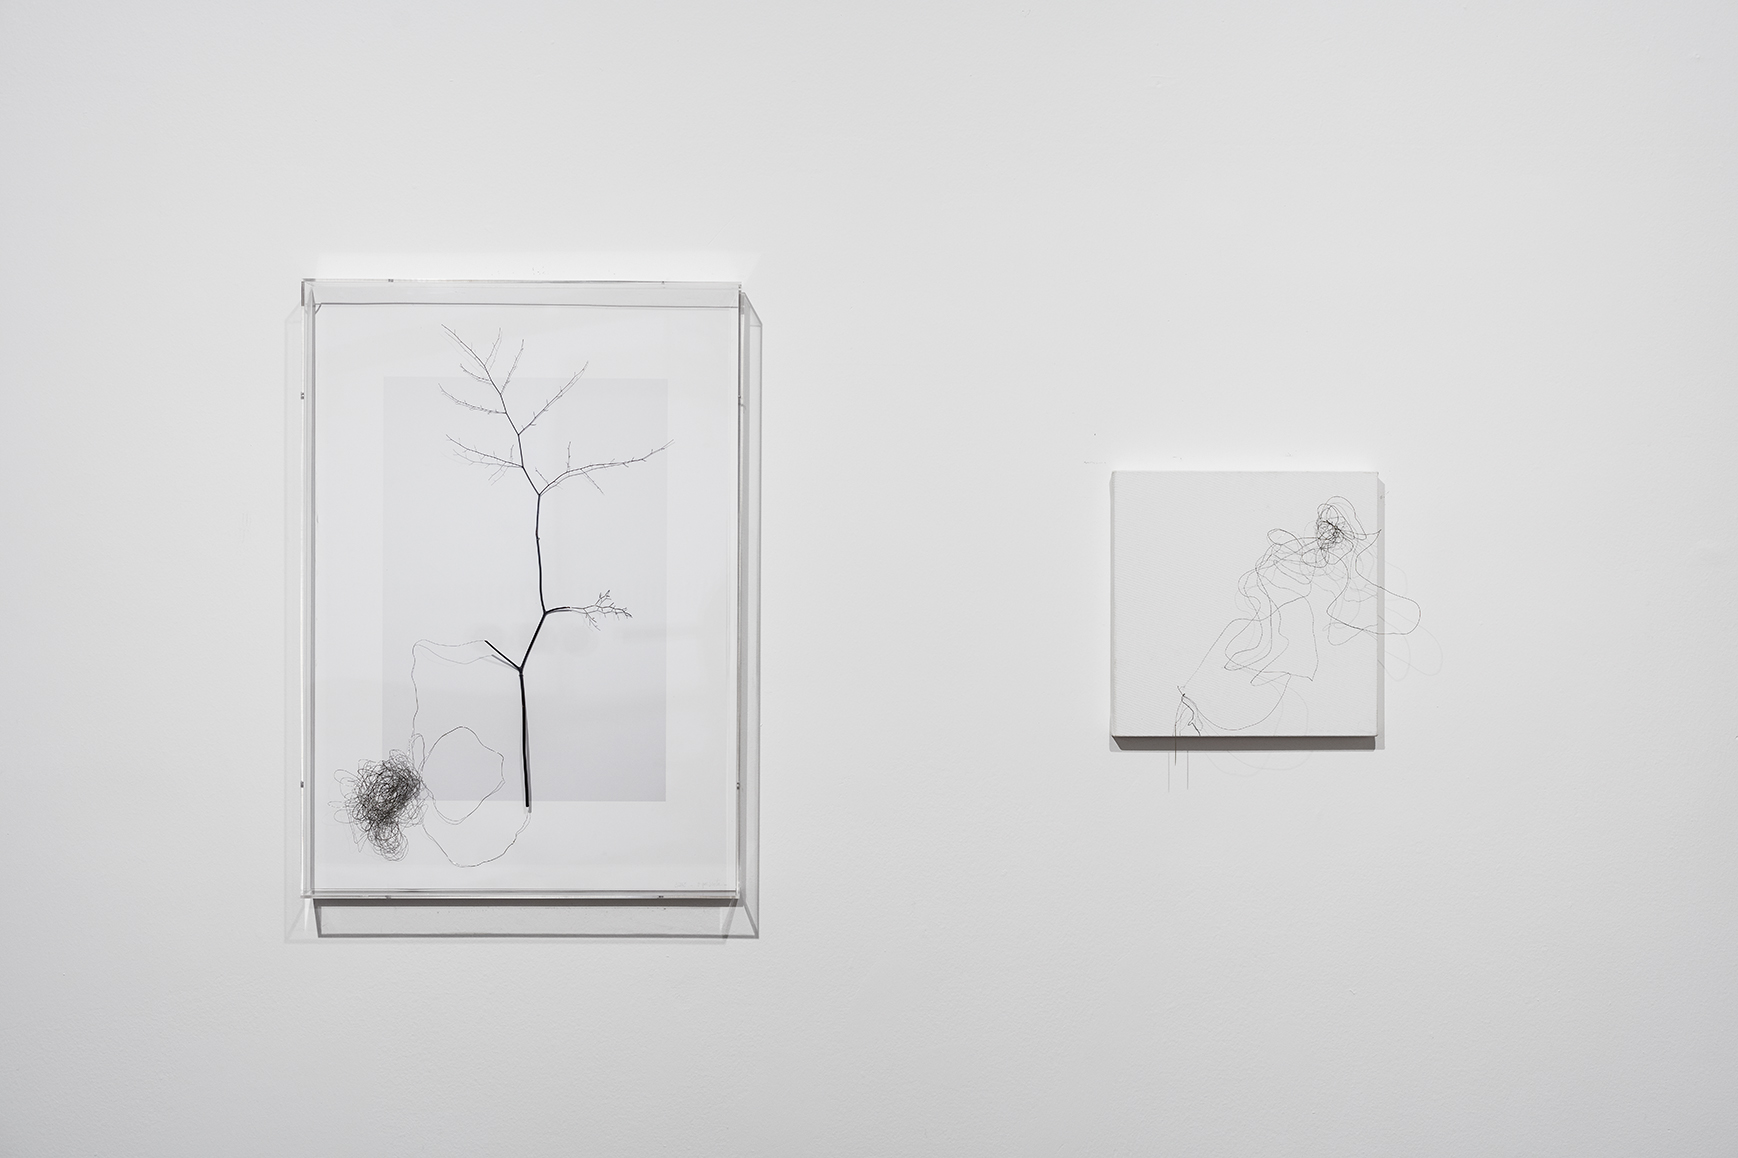 Série “Natureza em expansão”, 2015, vista da exposição no Paço Imperial - RJ